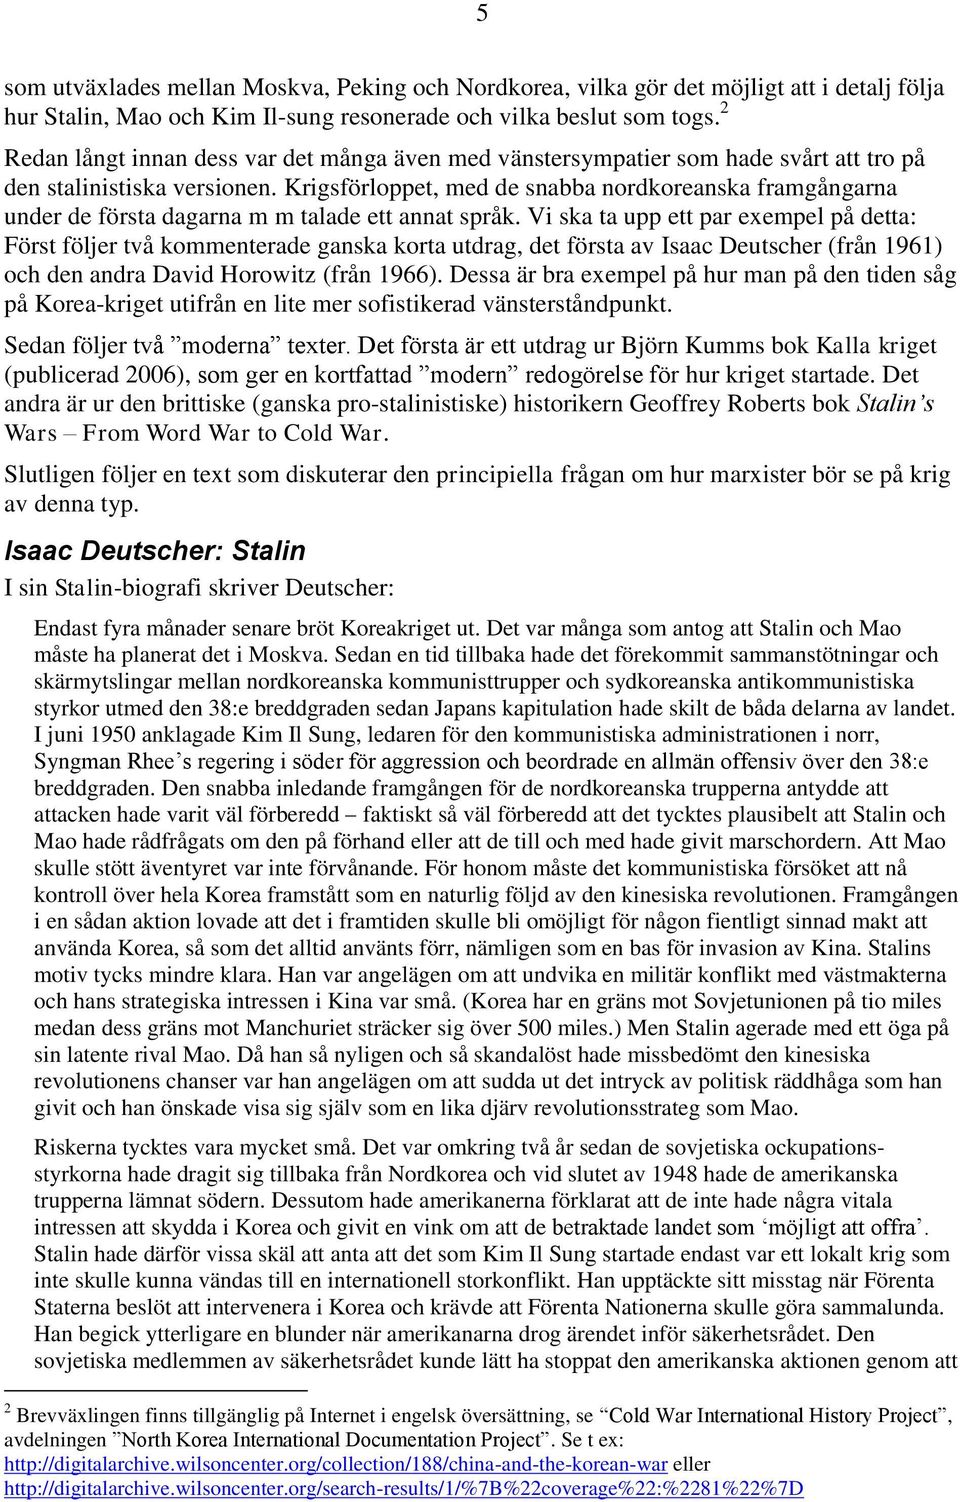 Krigsförloppet, med de snabba nordkoreanska framgångarna under de första dagarna m m talade ett annat språk.